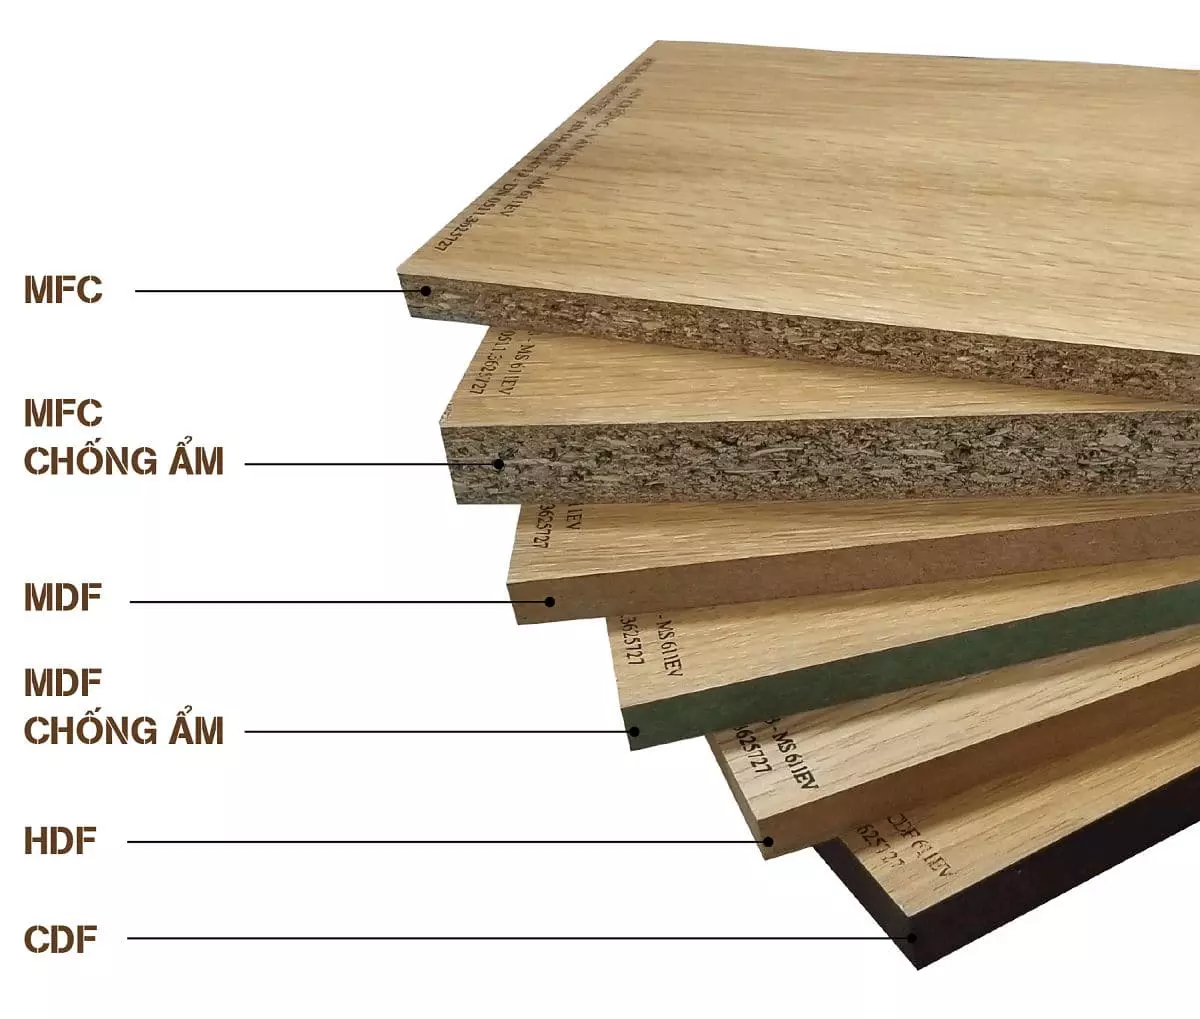 Trong thiết kế nội thất tối giản, 2 loại gỗ MFC và MDF được xem là vật liệu được lựa chọn, sử dụng nhiều nhất trong thiết kế không gian sống